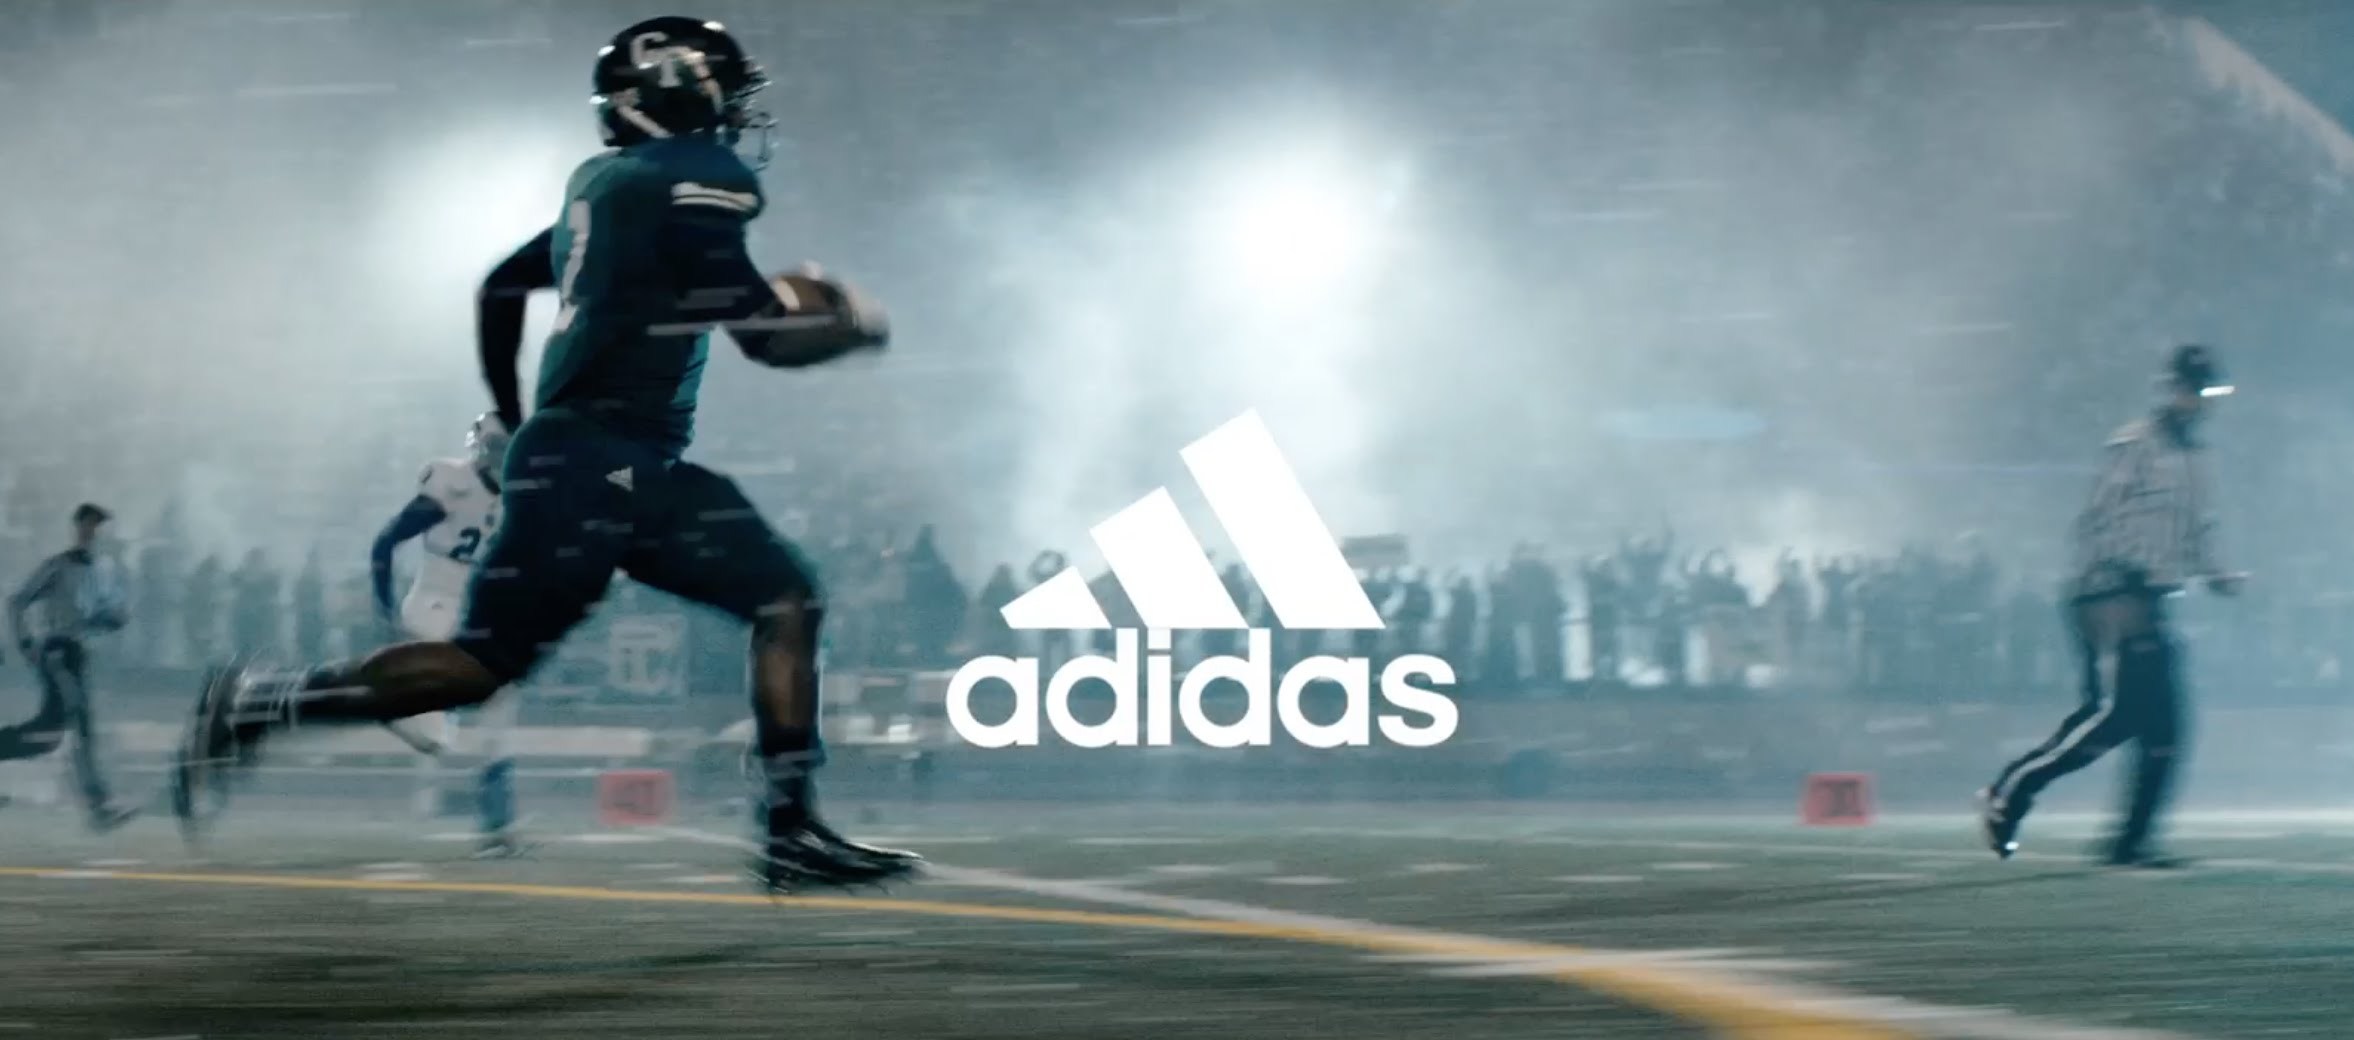 Вдохновляющая реклама от Adidas